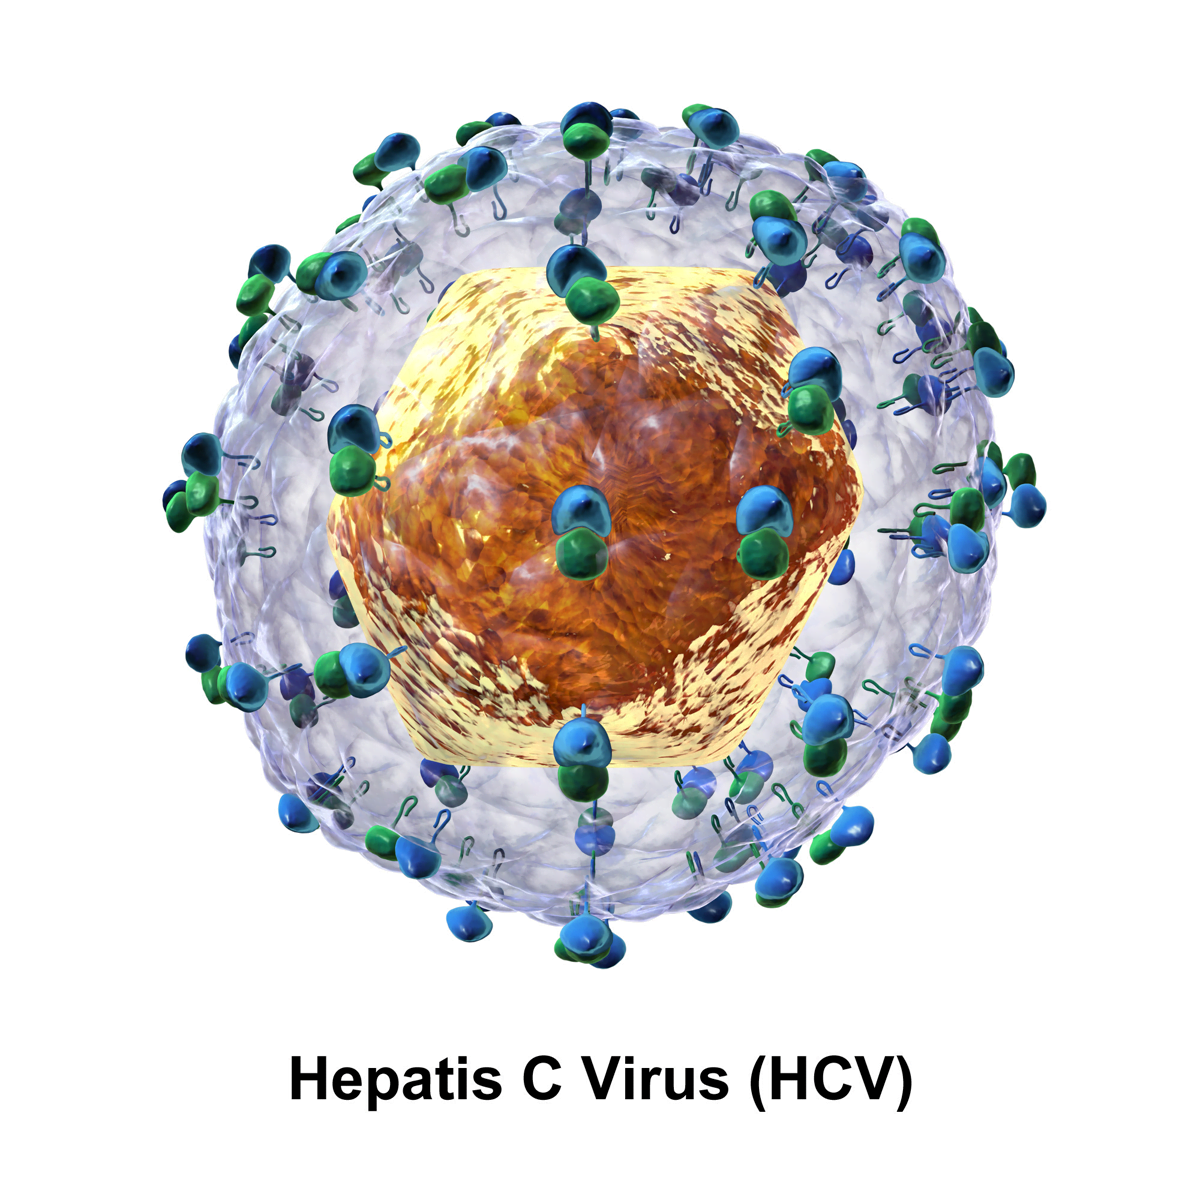 HCV 1 جائزة نوبل لاكتشاف فيروس سي | أمل جديد يلوح في الأفق مجلة نقطة العلمية